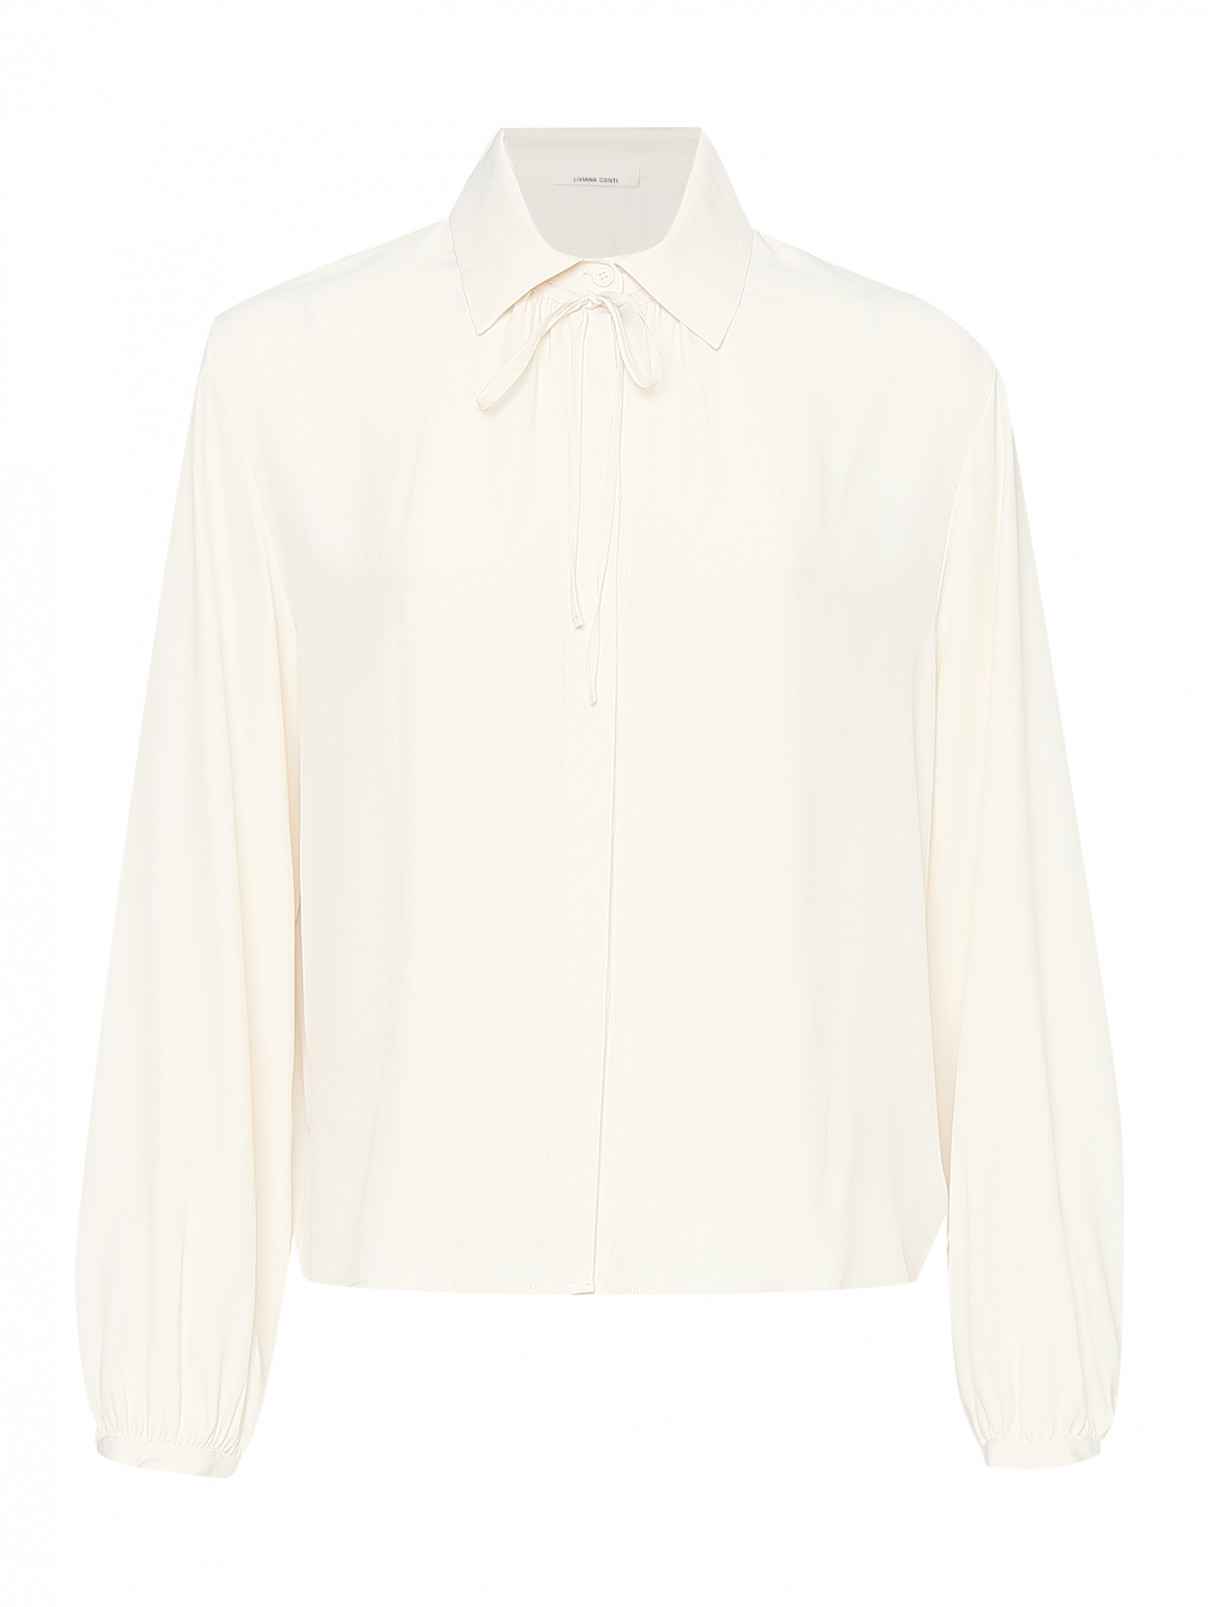 Однотонная блуза из шелка Liviana Conti  –  Общий вид  – Цвет:  Белый